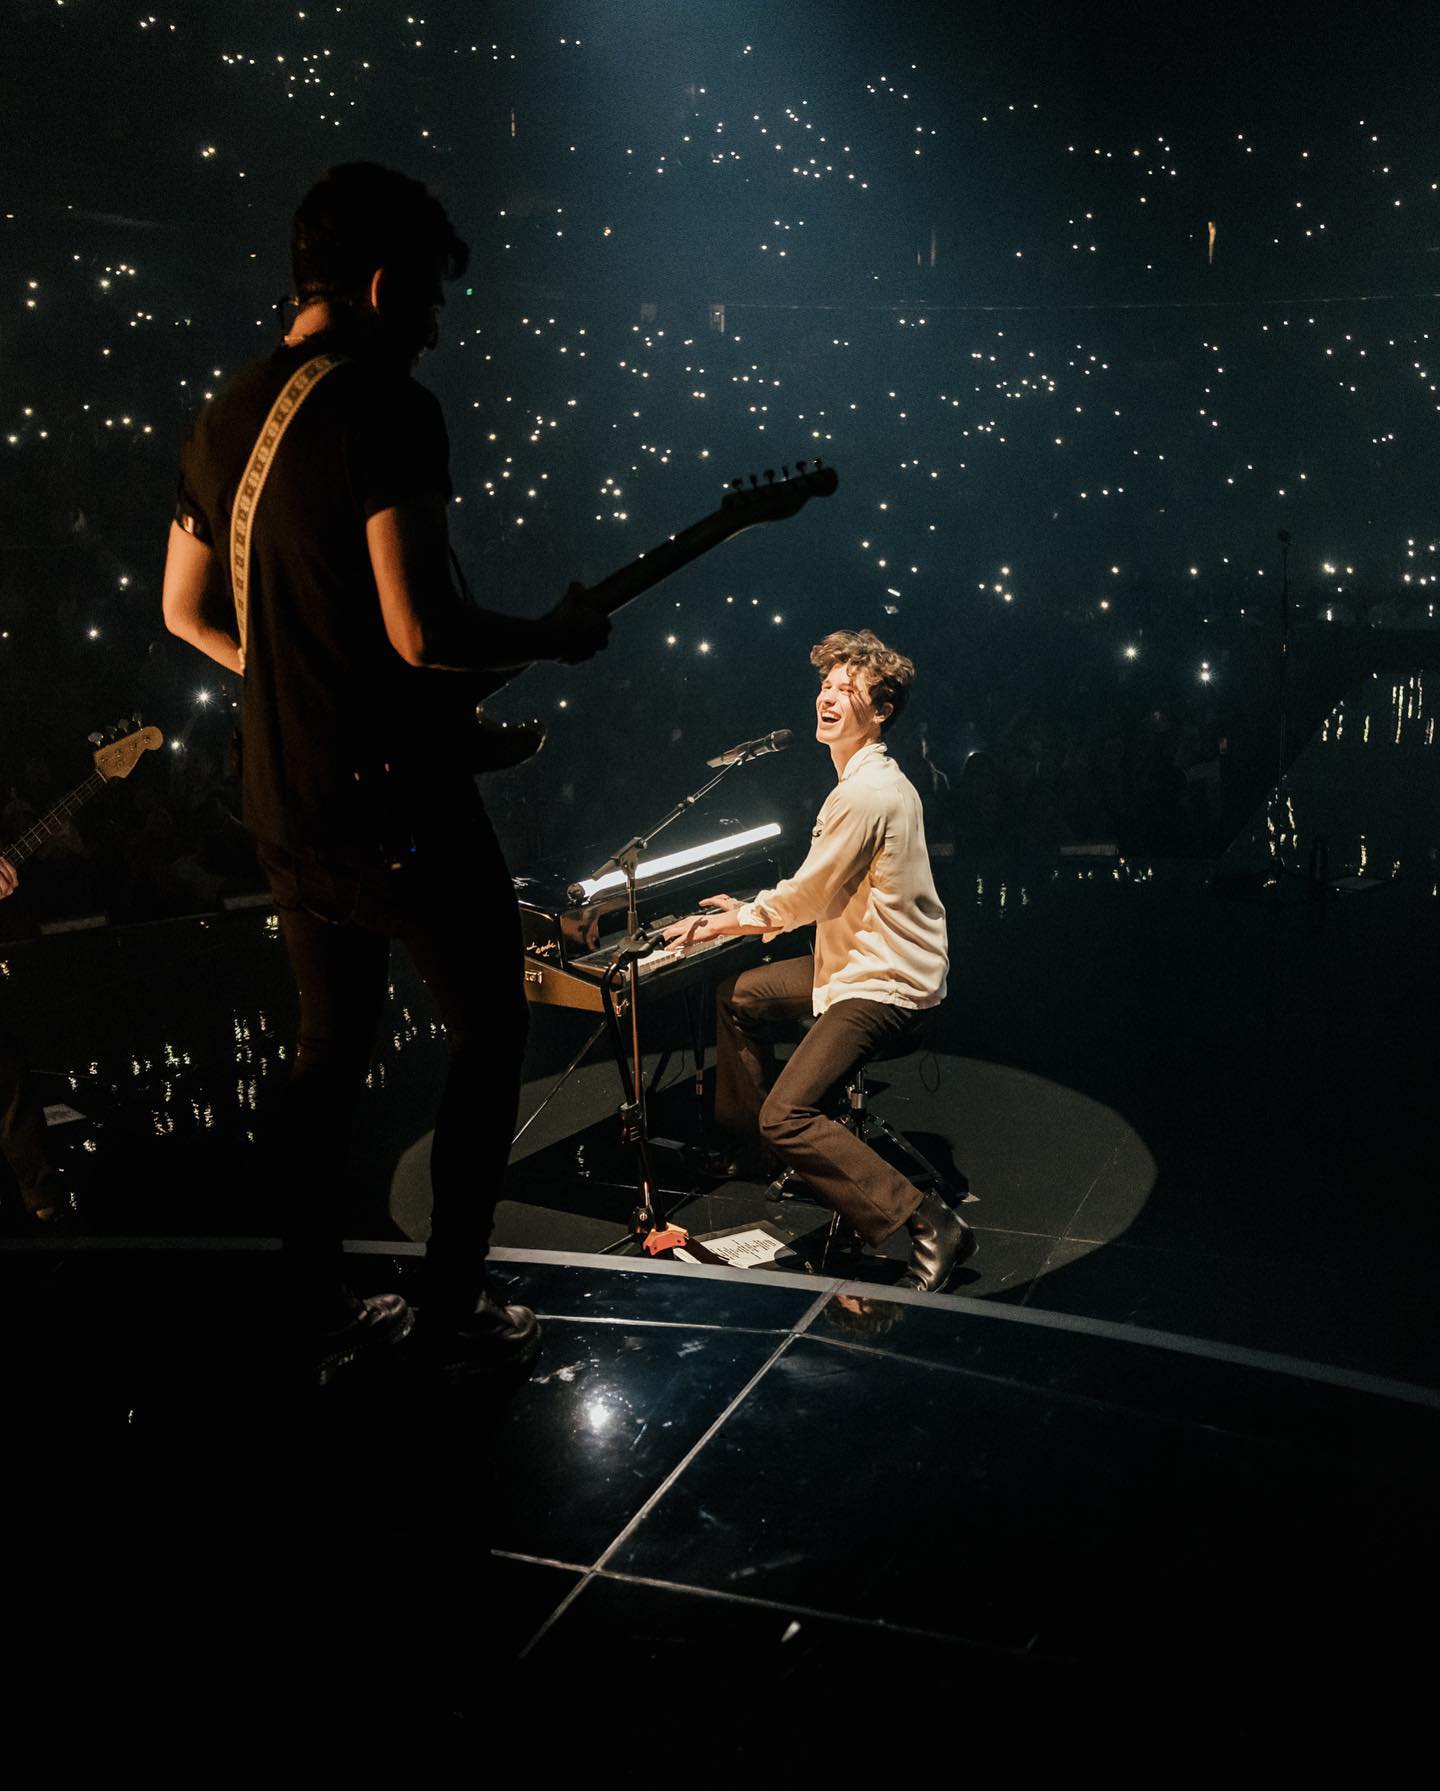 Shawn Mendes cancels Wonder world tour: How to get ticket refund